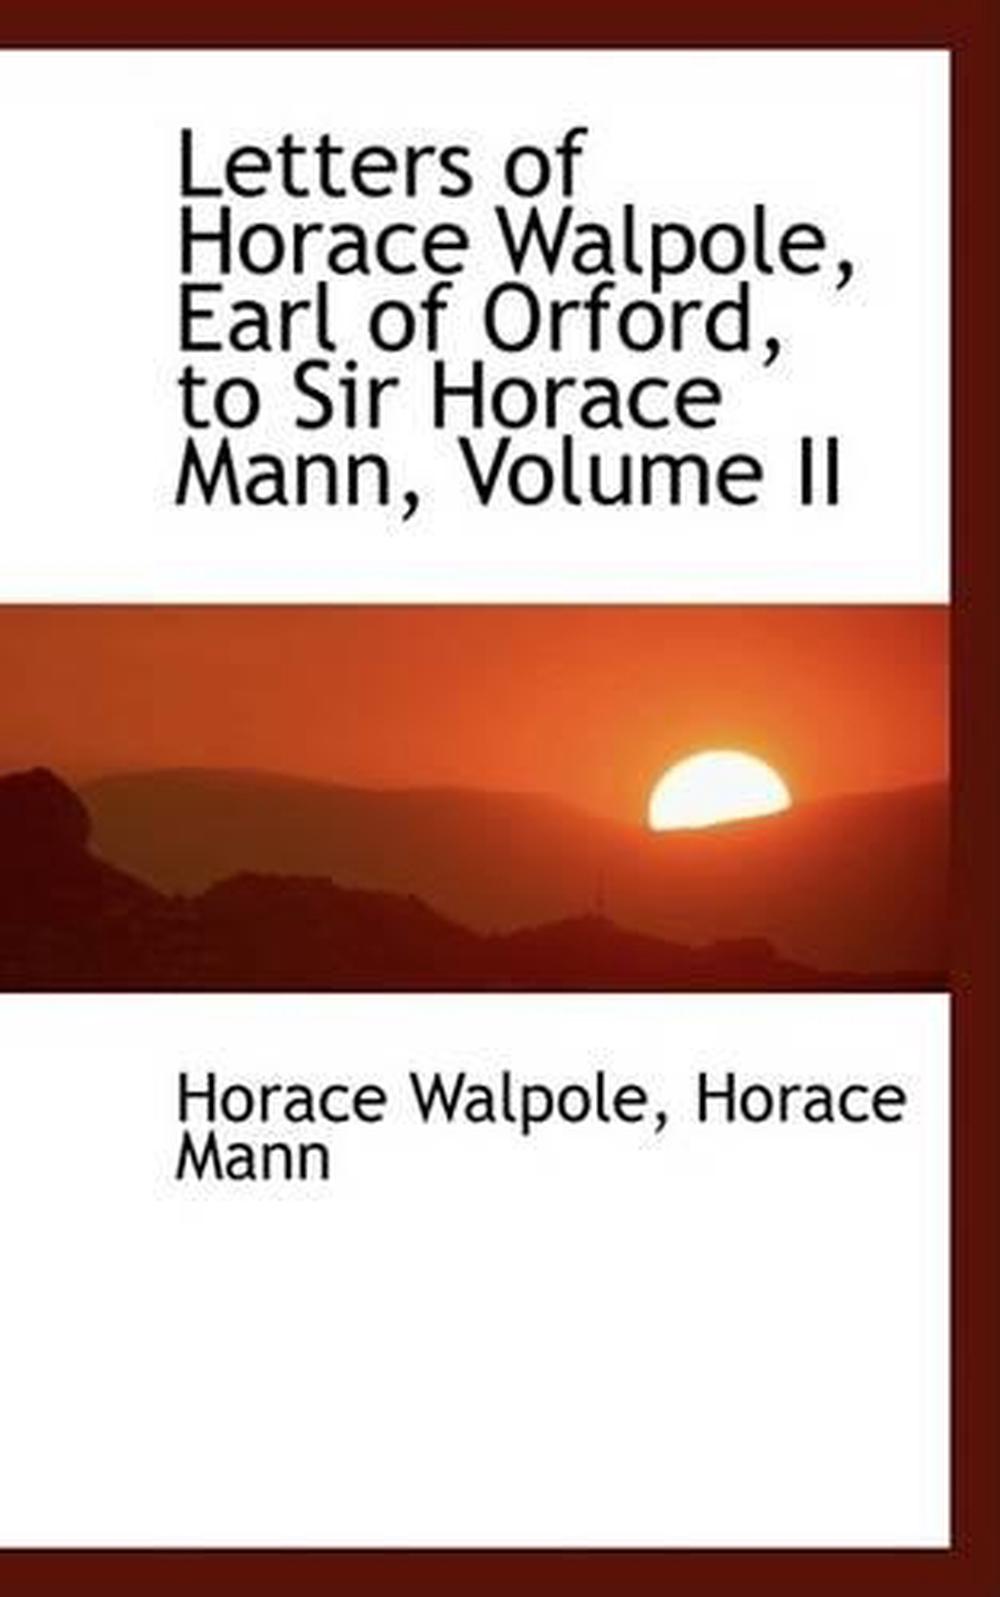 Horace mann important dates